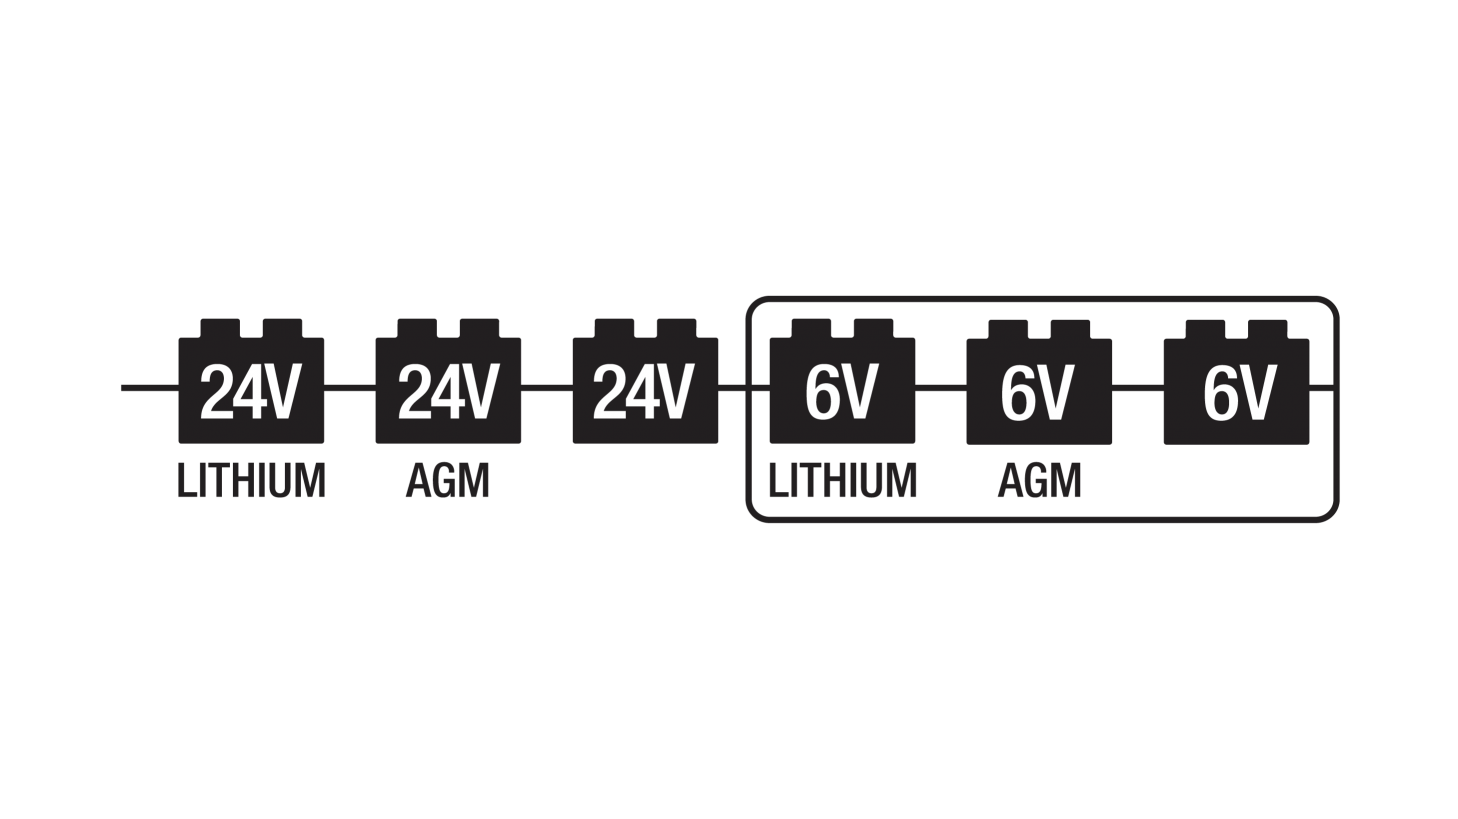 6V / 24V Mode LEDs [Press and Hold]